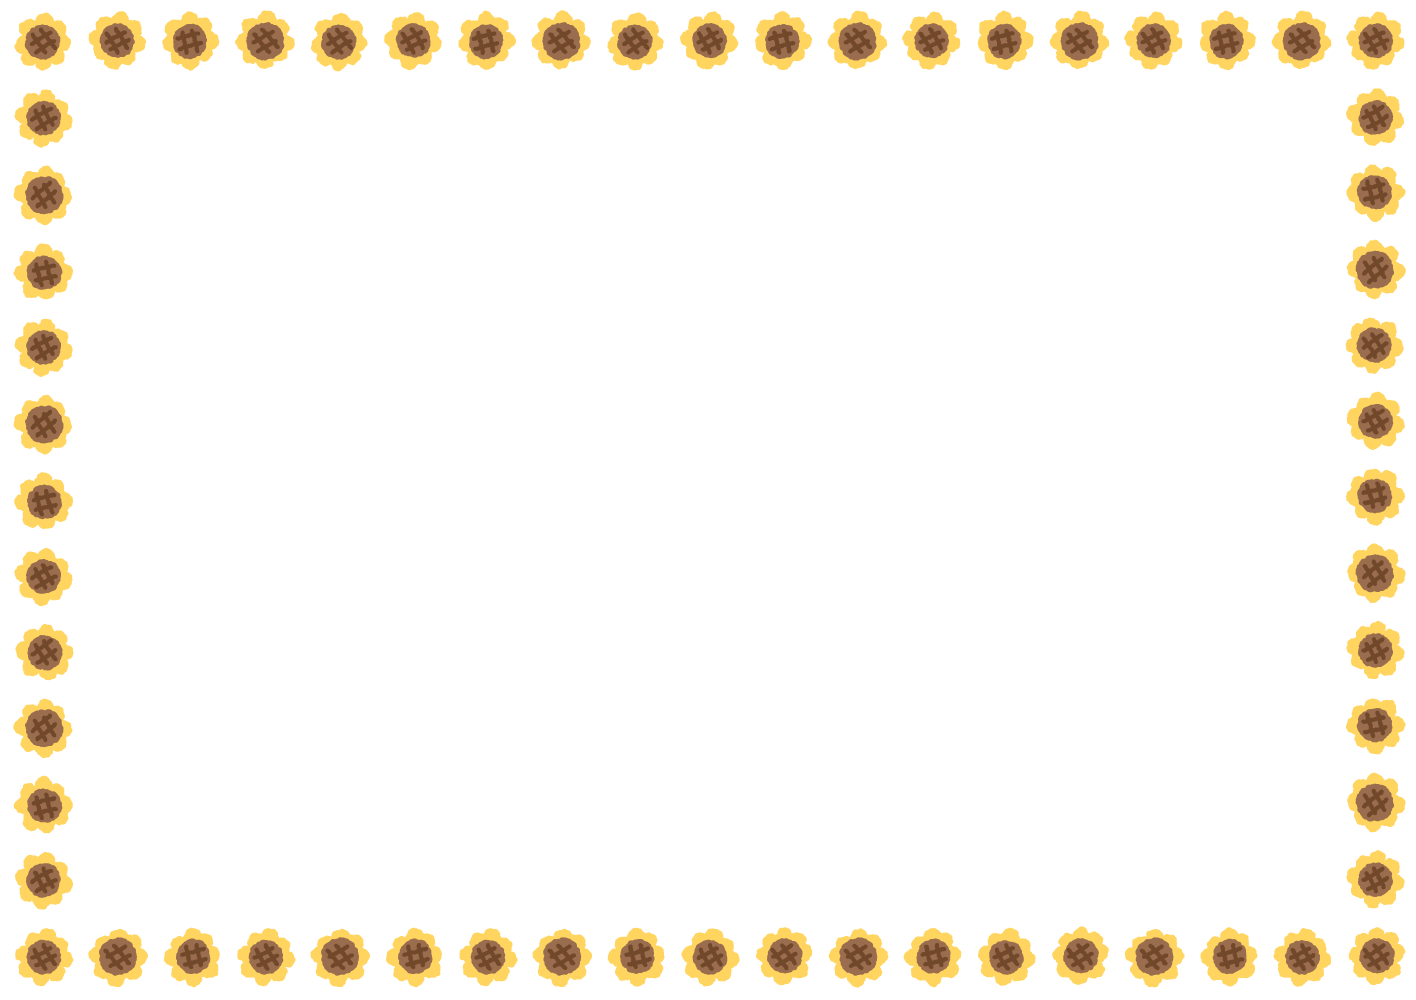 ヒマワリのフレーム素材のフリーイラスト Clip art of sunflower paper frame